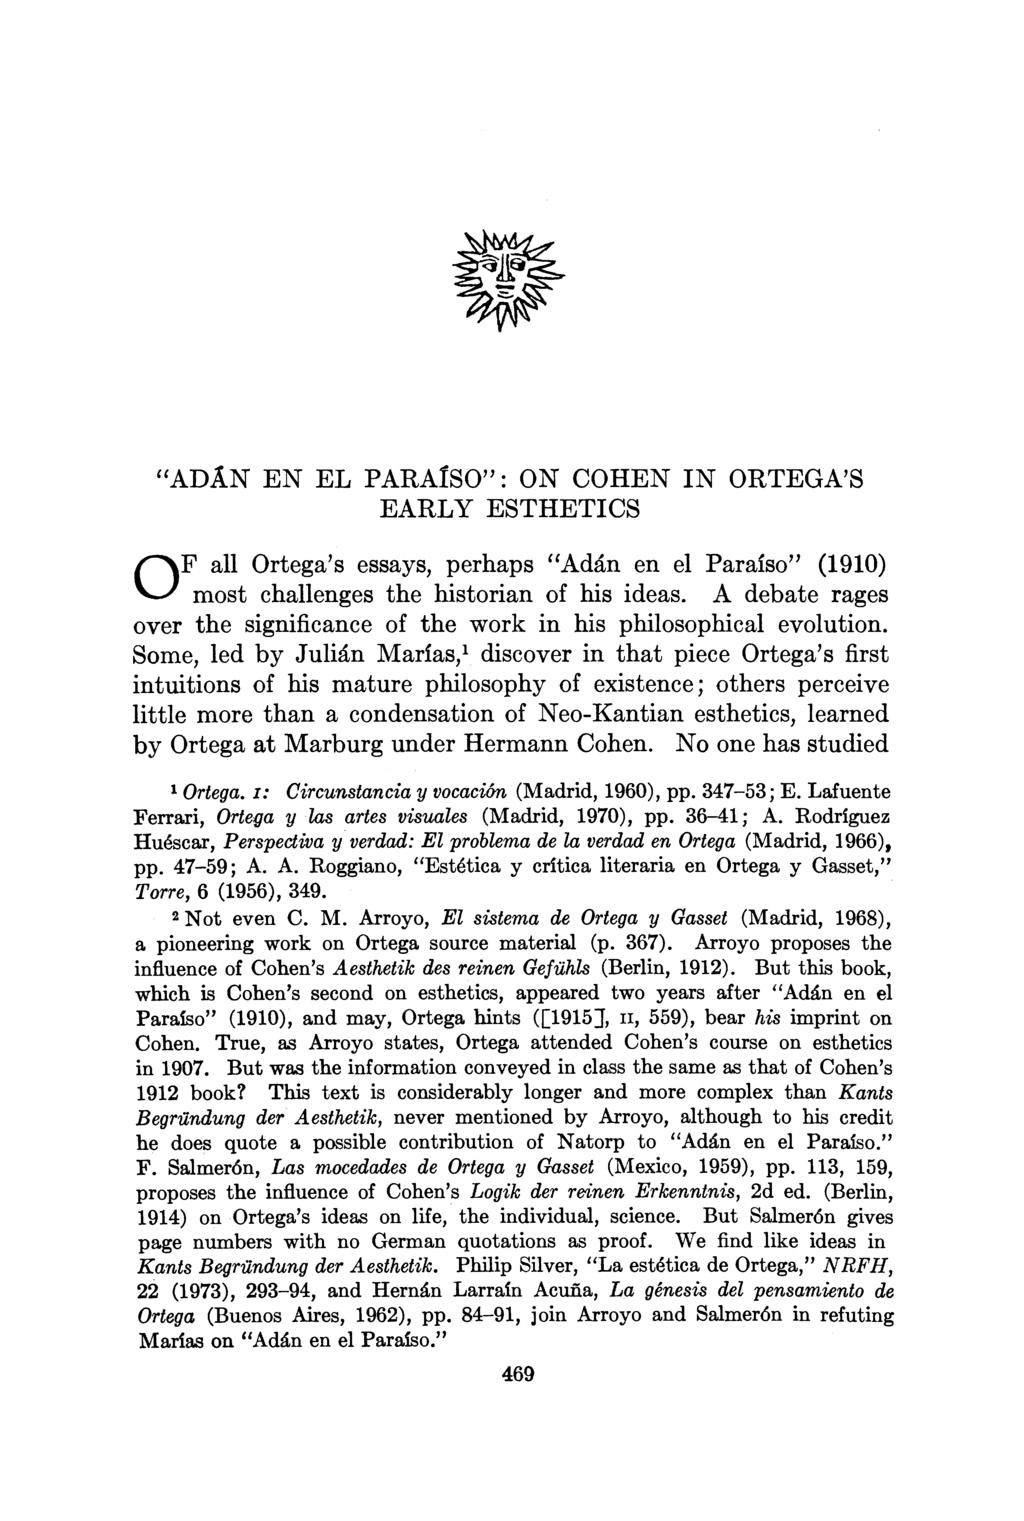 "ADAN EN EL PARAISO": ON COHEN IN ORTEGA'S EARLY ESTHETICS OF all Ortega's essays, perhaps "Adan en el Paraiso" (1910) most challenges the historian of his ideas.